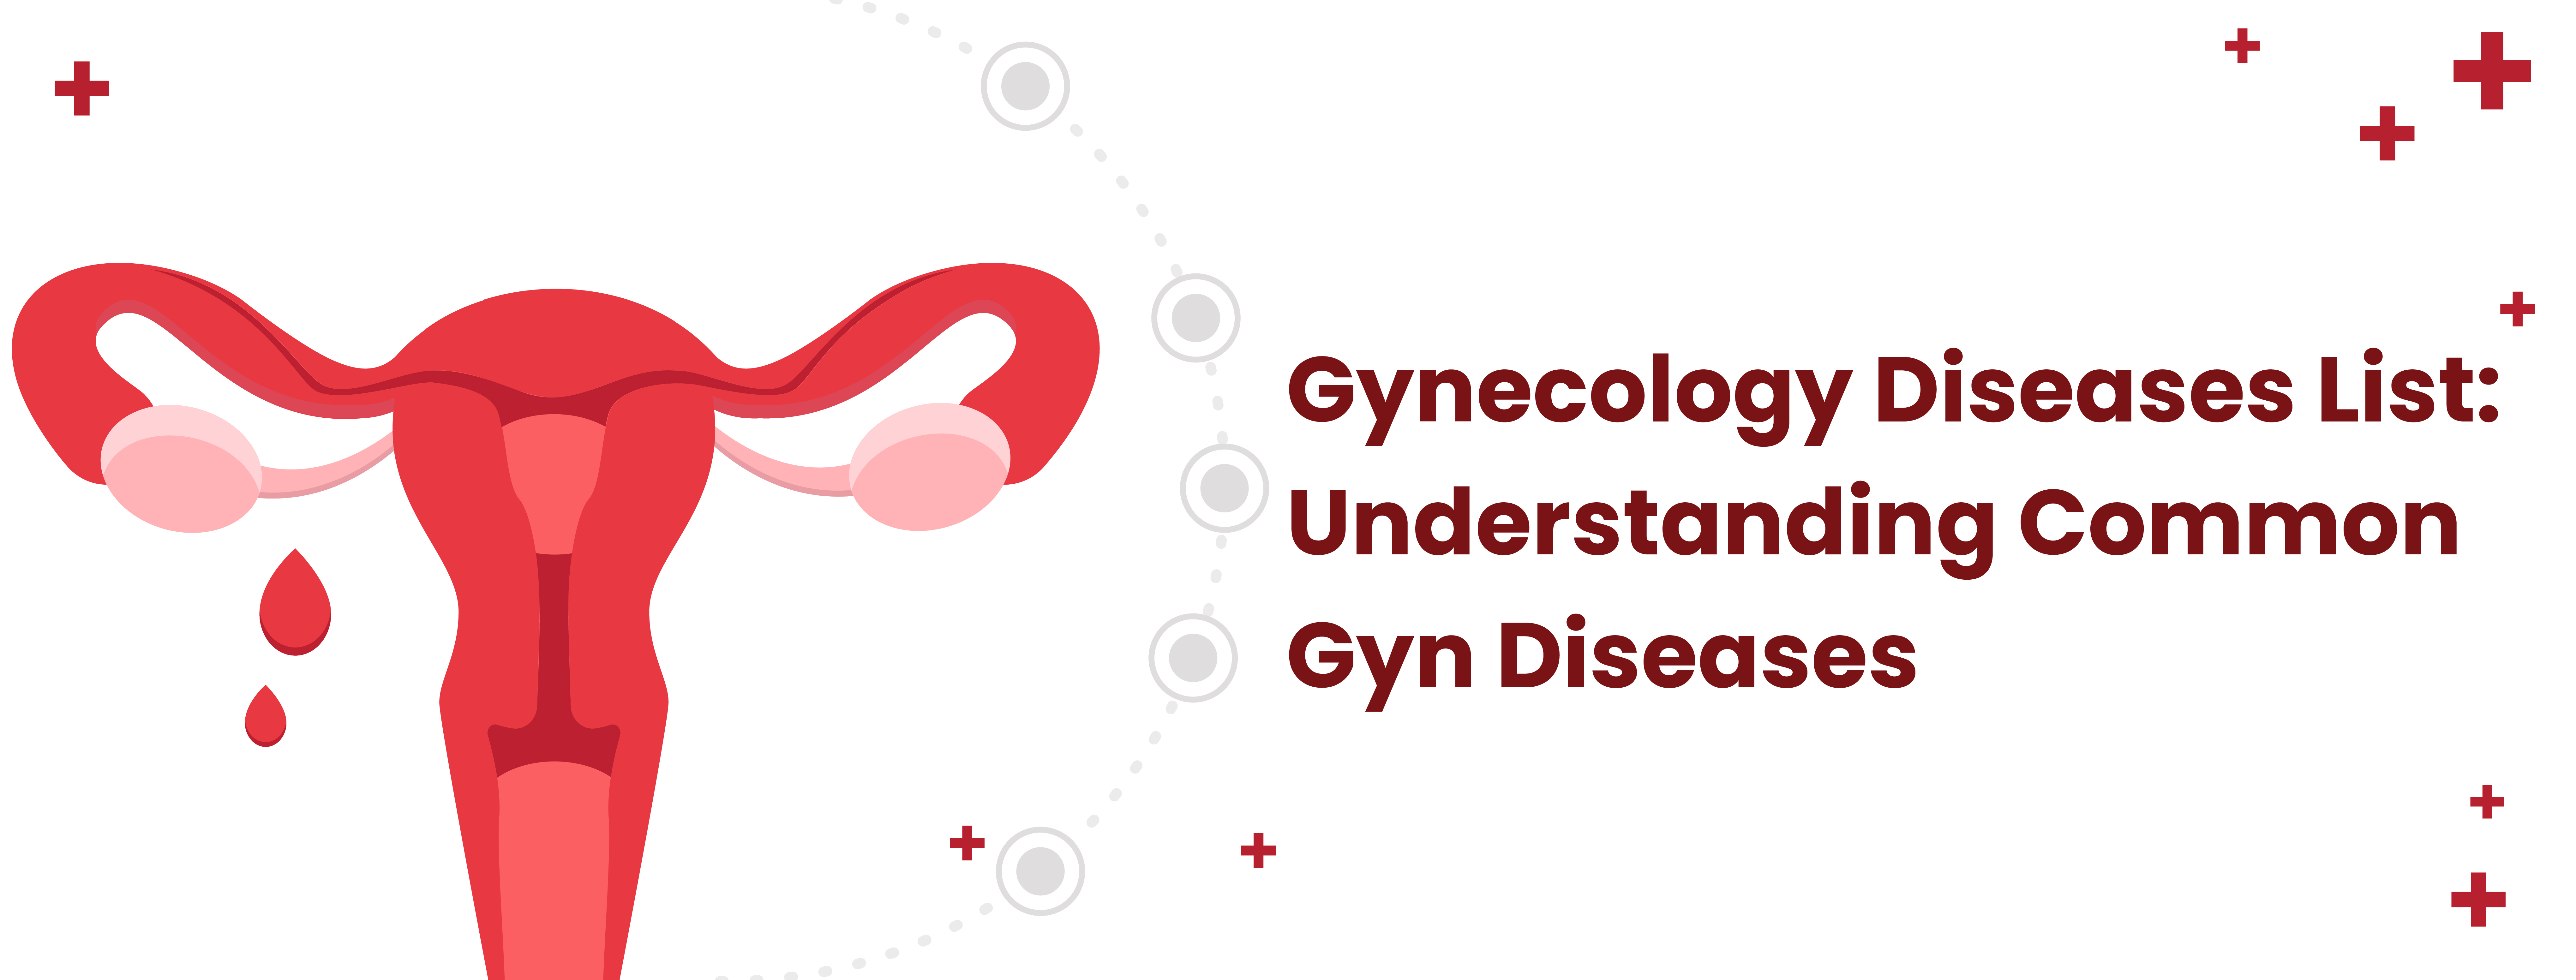 Gynecology Diseases List: Understanding Common Gyn Diseases